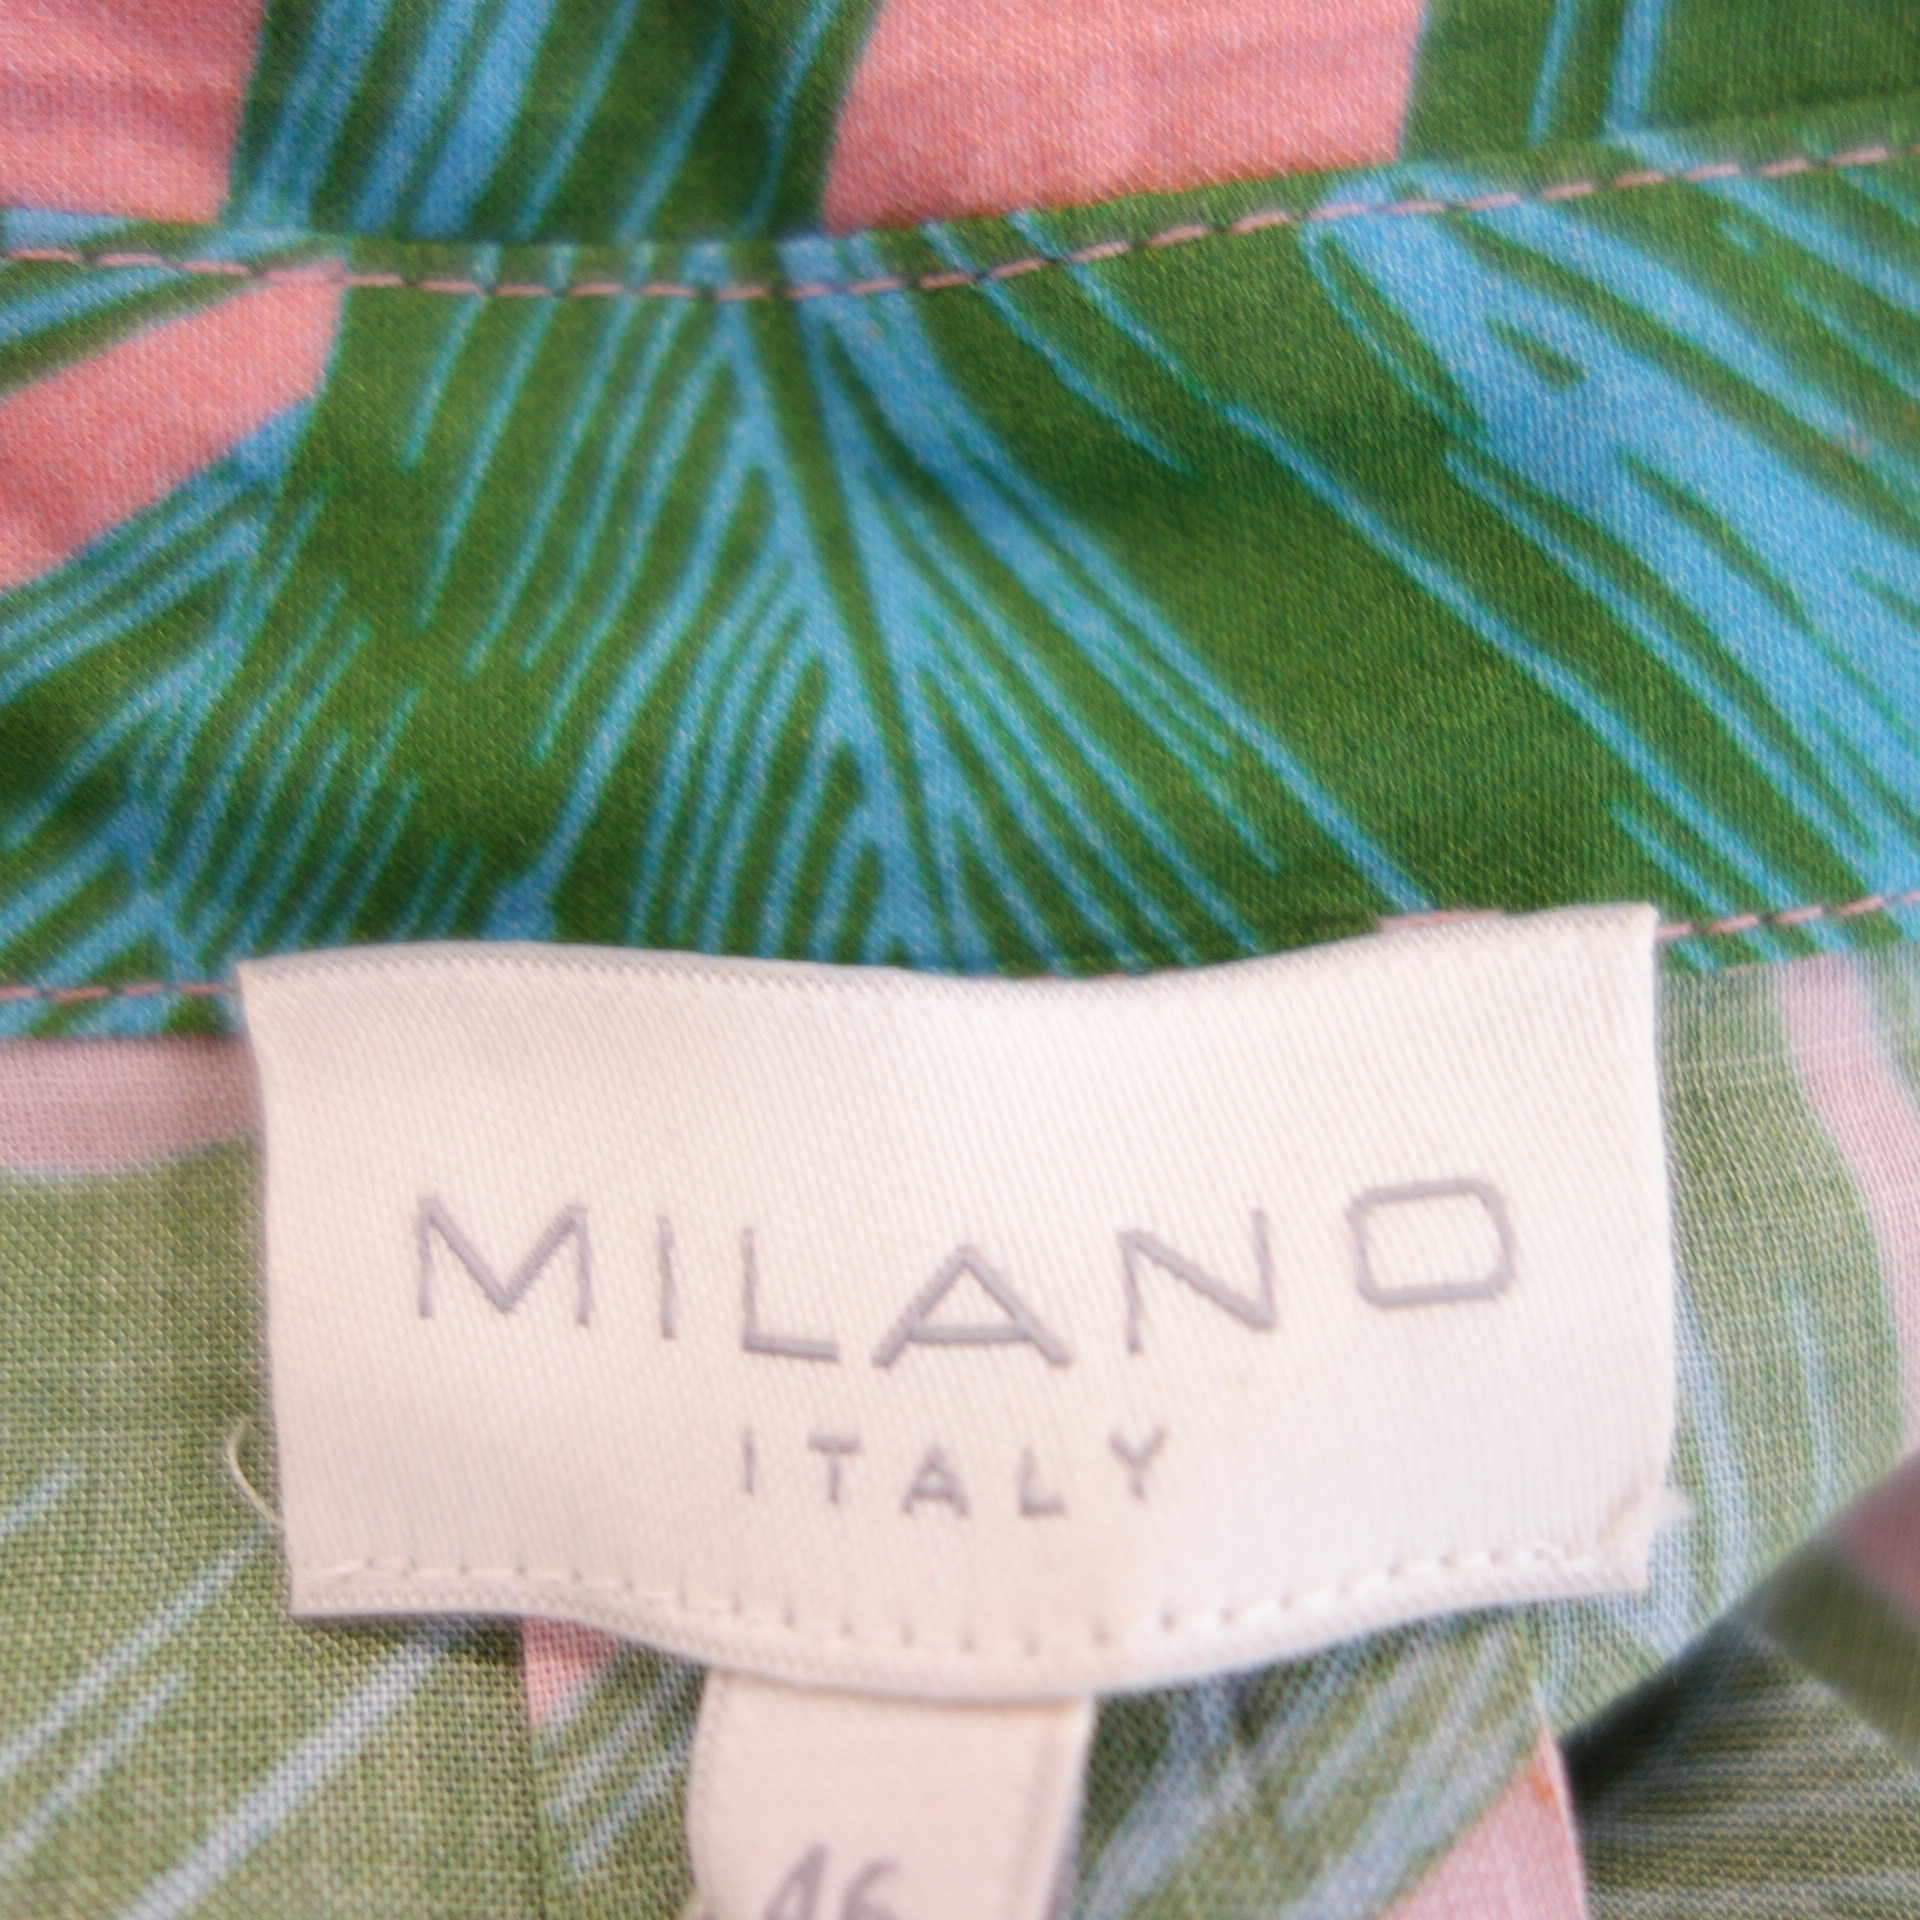 MILANO ITALY Damen Bluse Rosa Grün Braun Blumen Muster 100% Viskose